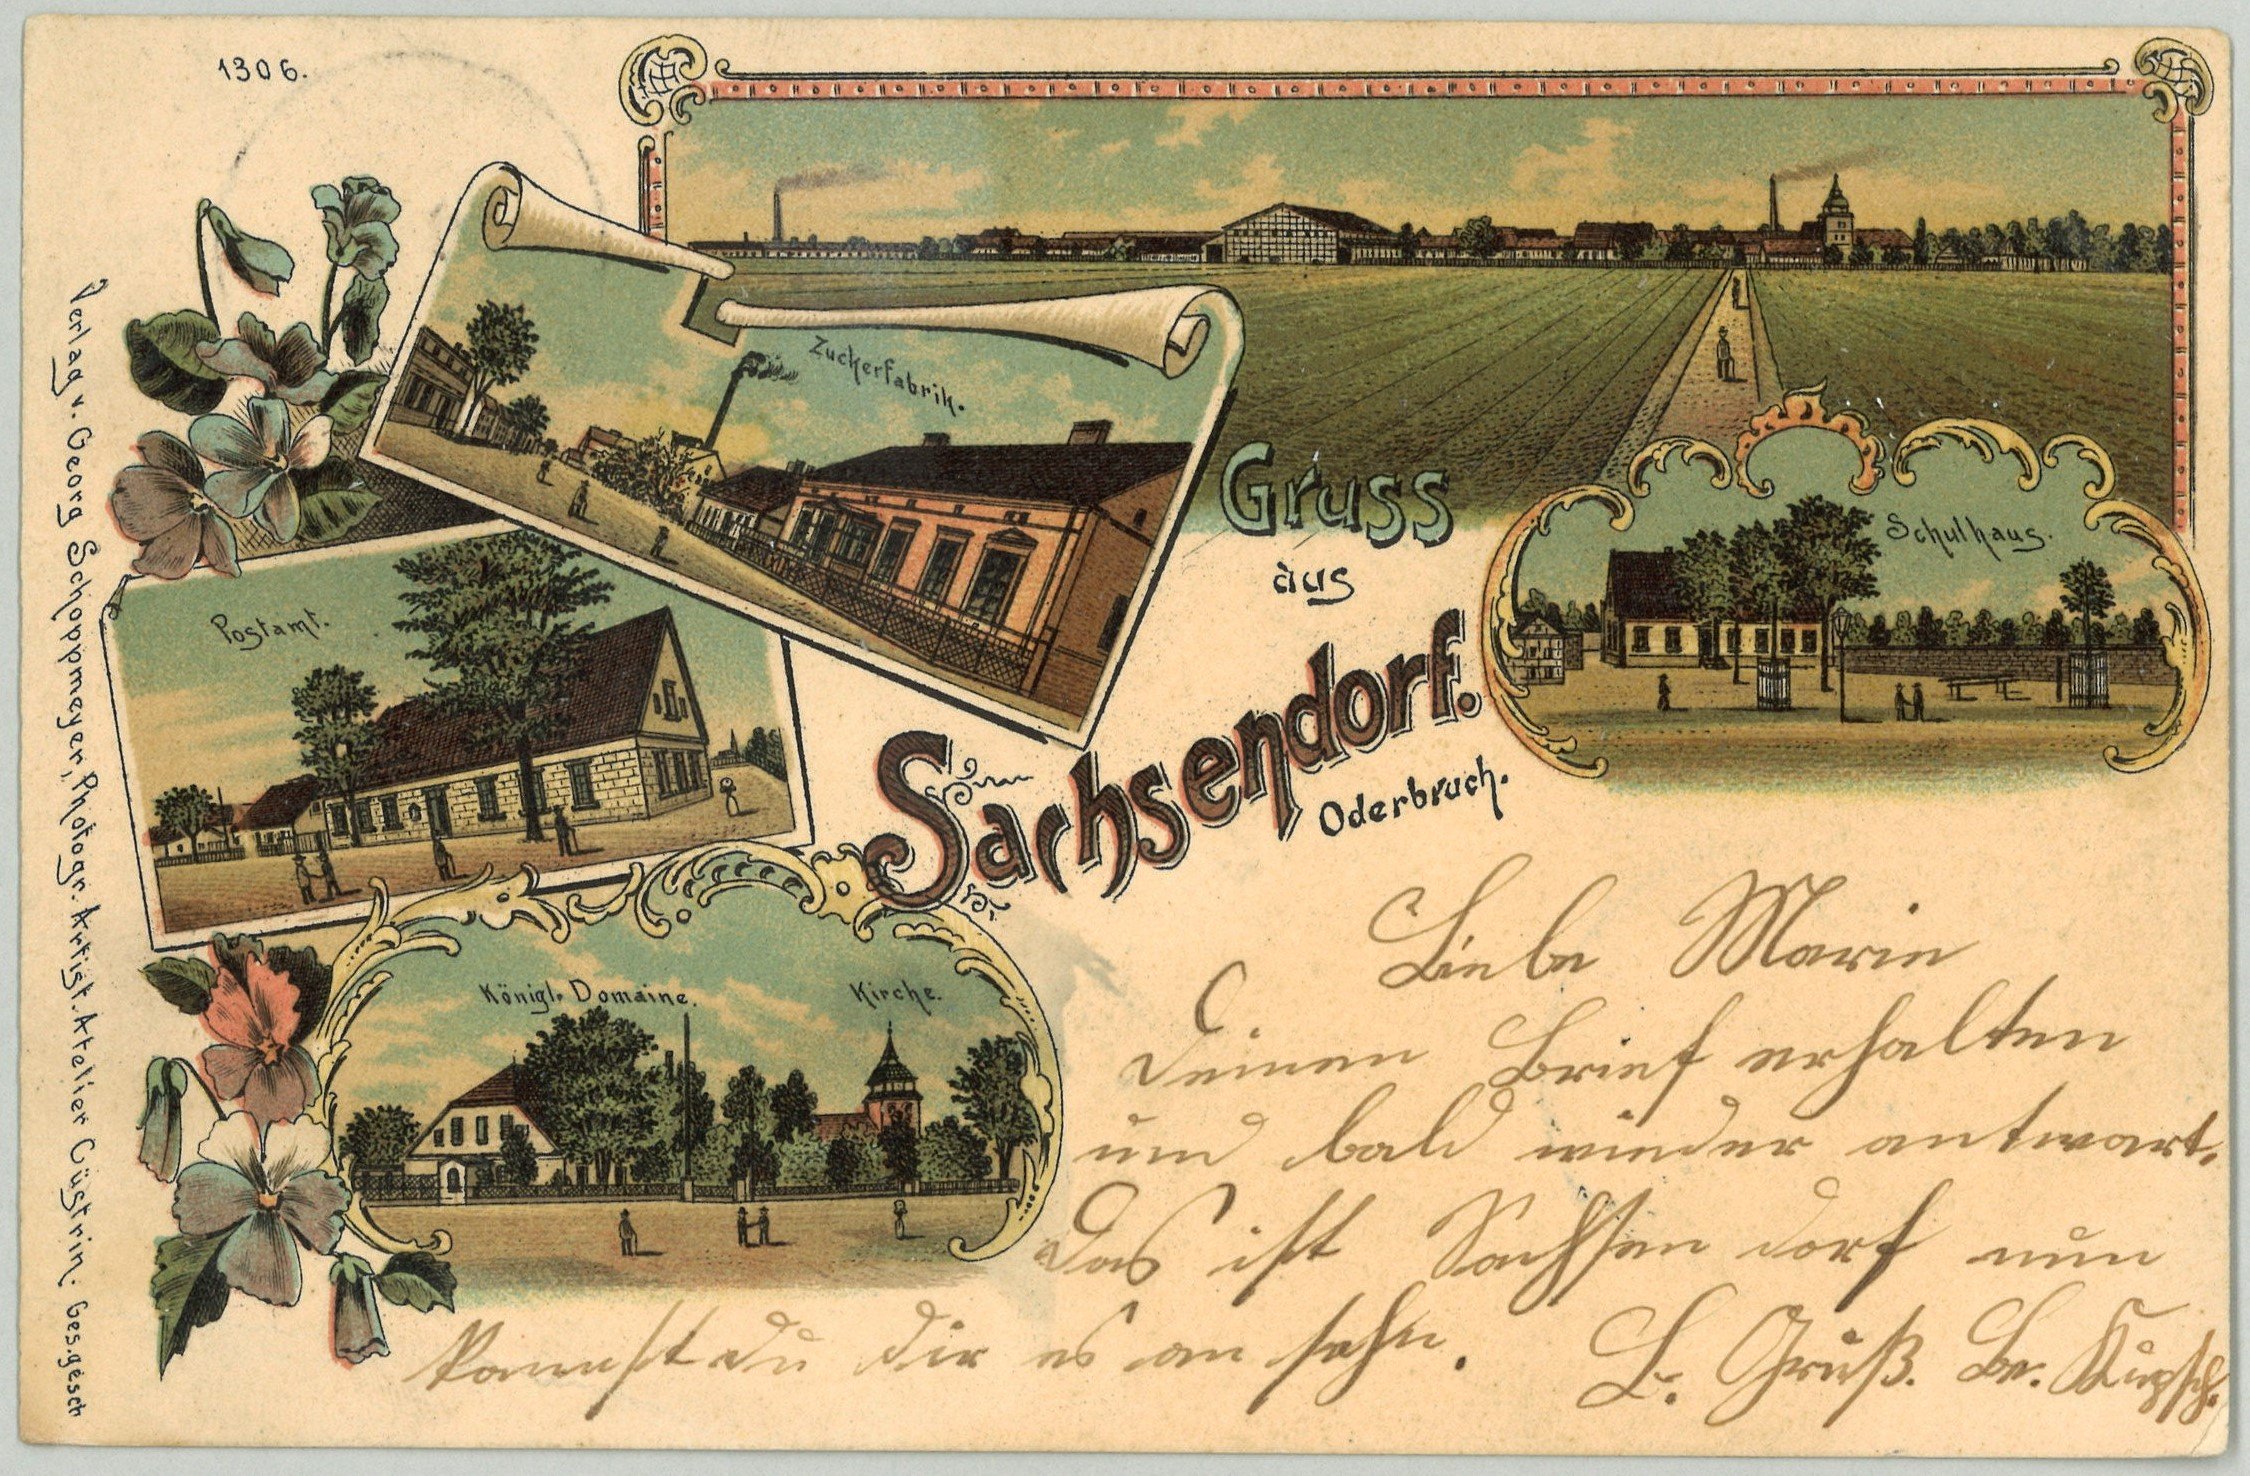 Sachsendorf (Oderbruch): Drei Ansichten (Landesgeschichtliche Vereinigung für die Mark Brandenburg e.V., Archiv CC BY)